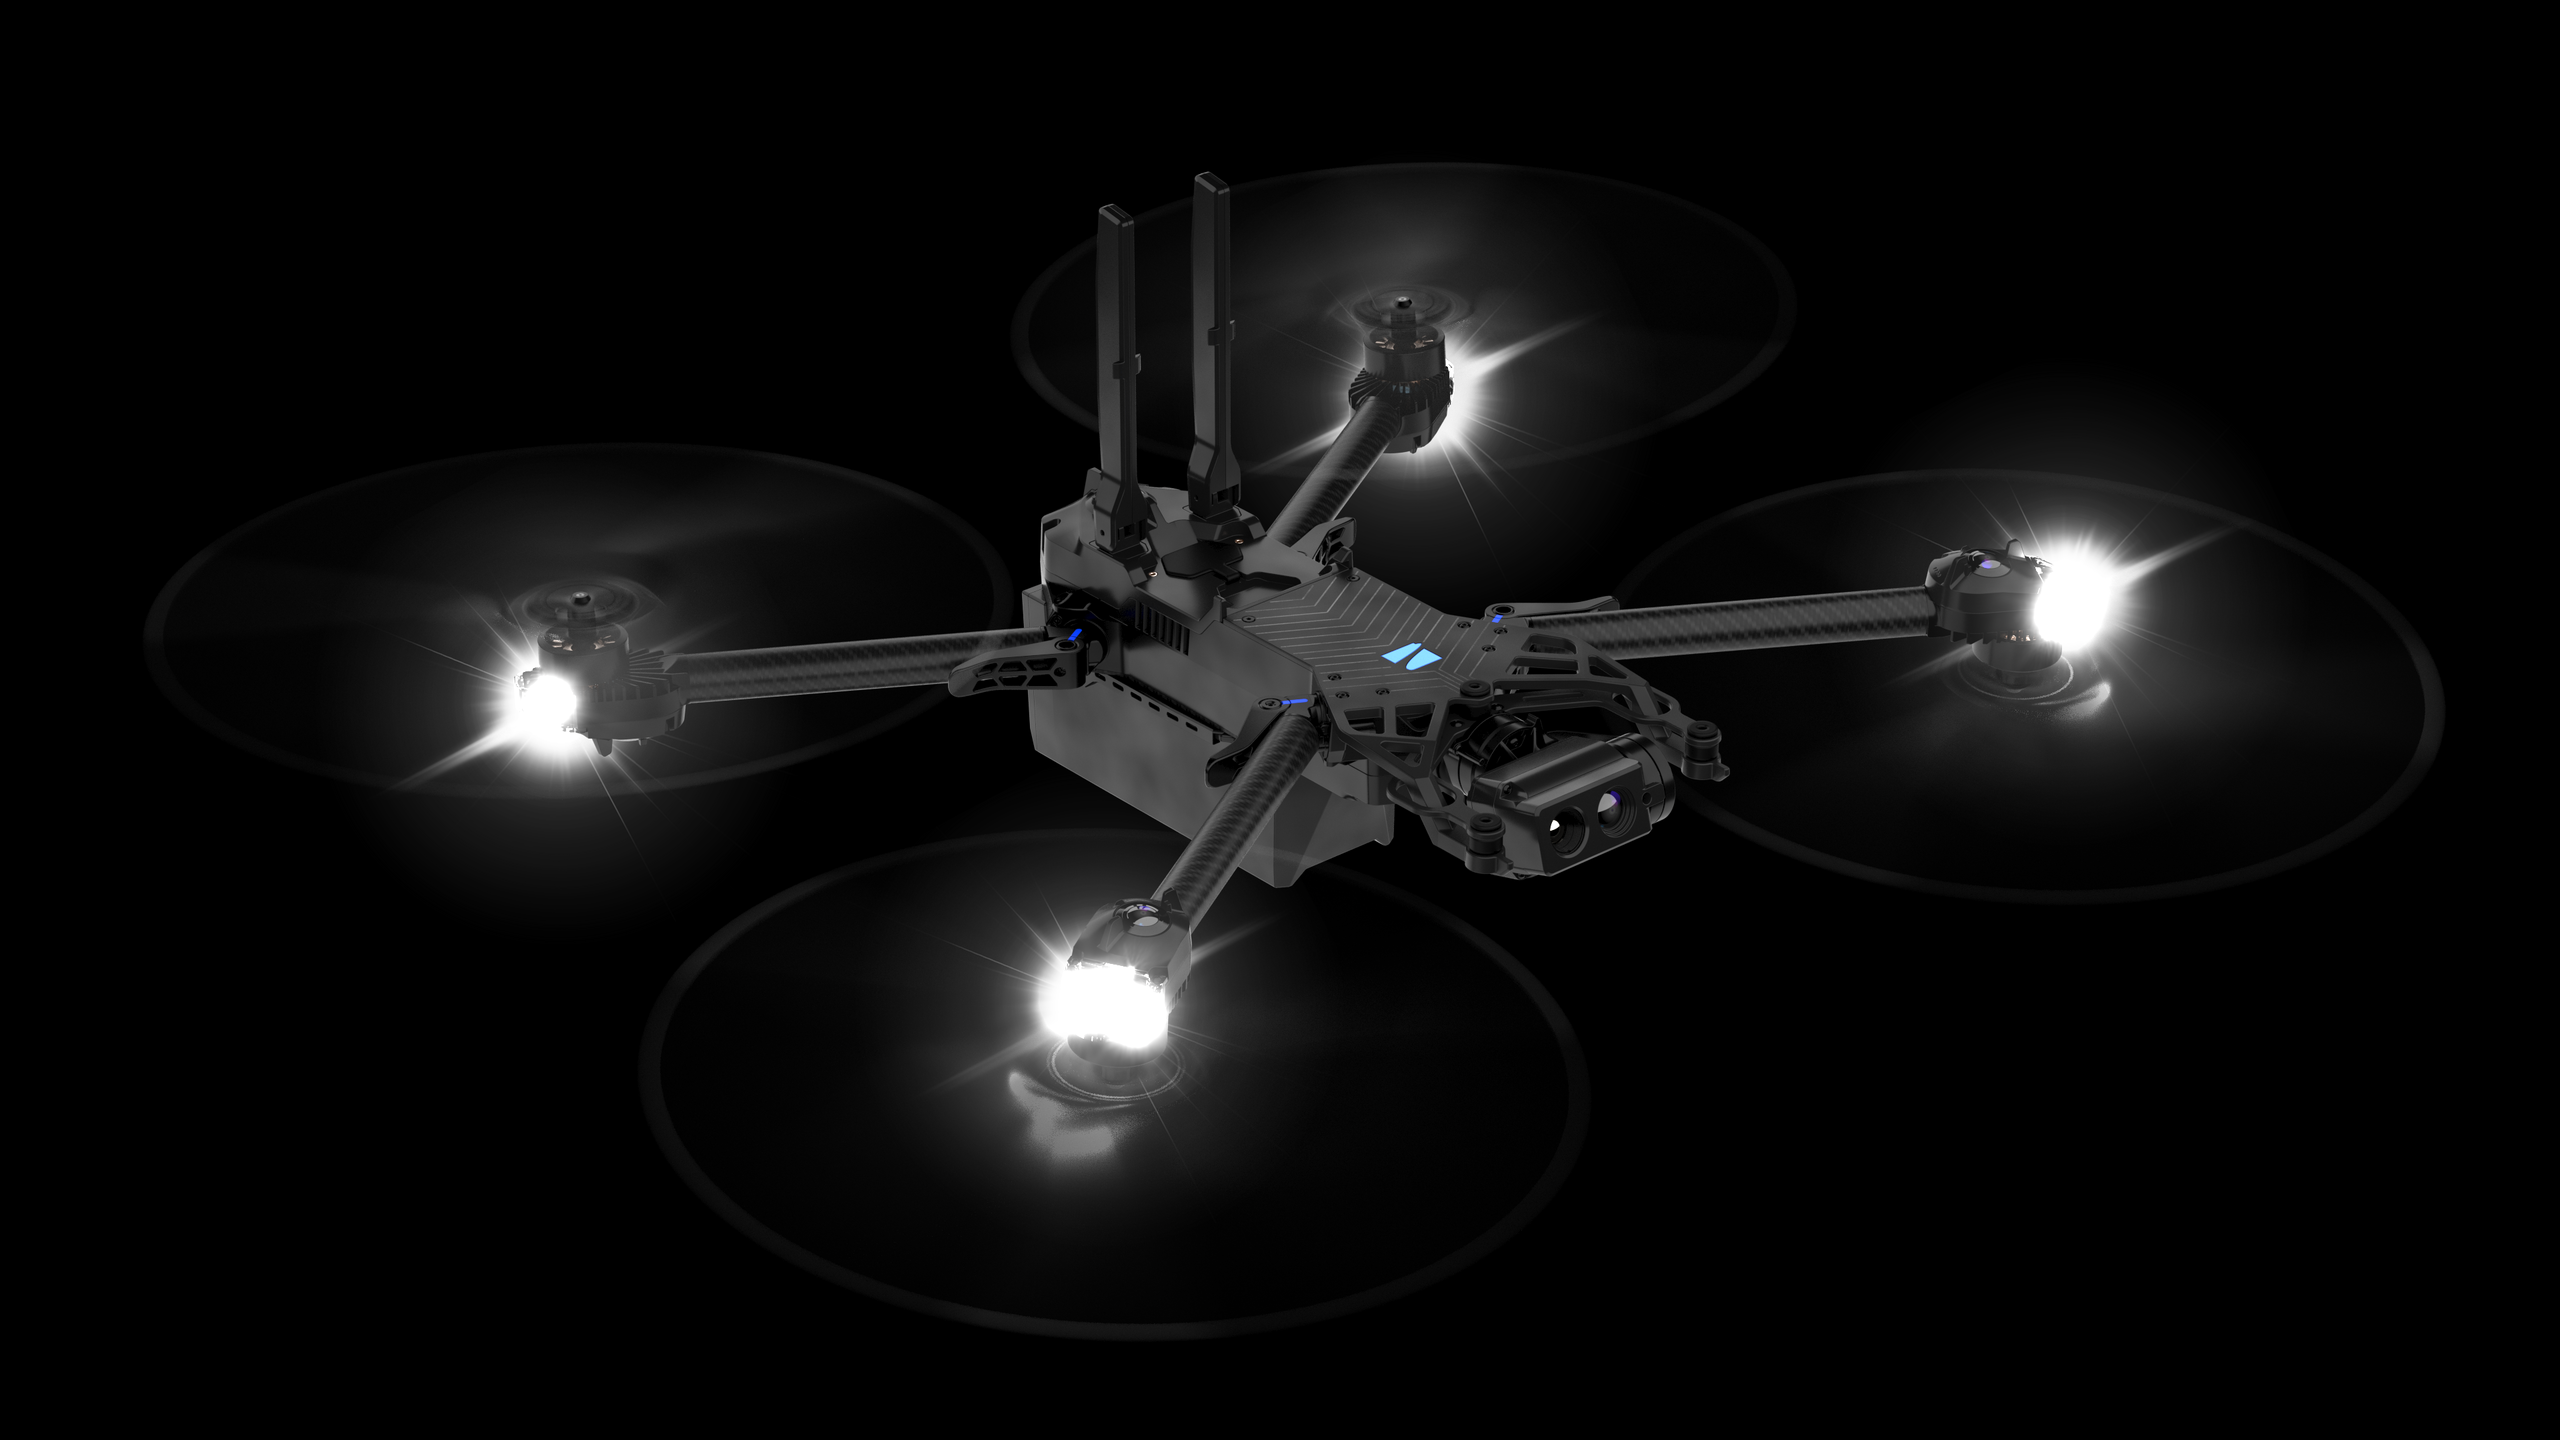 Skydio x2 drone at night